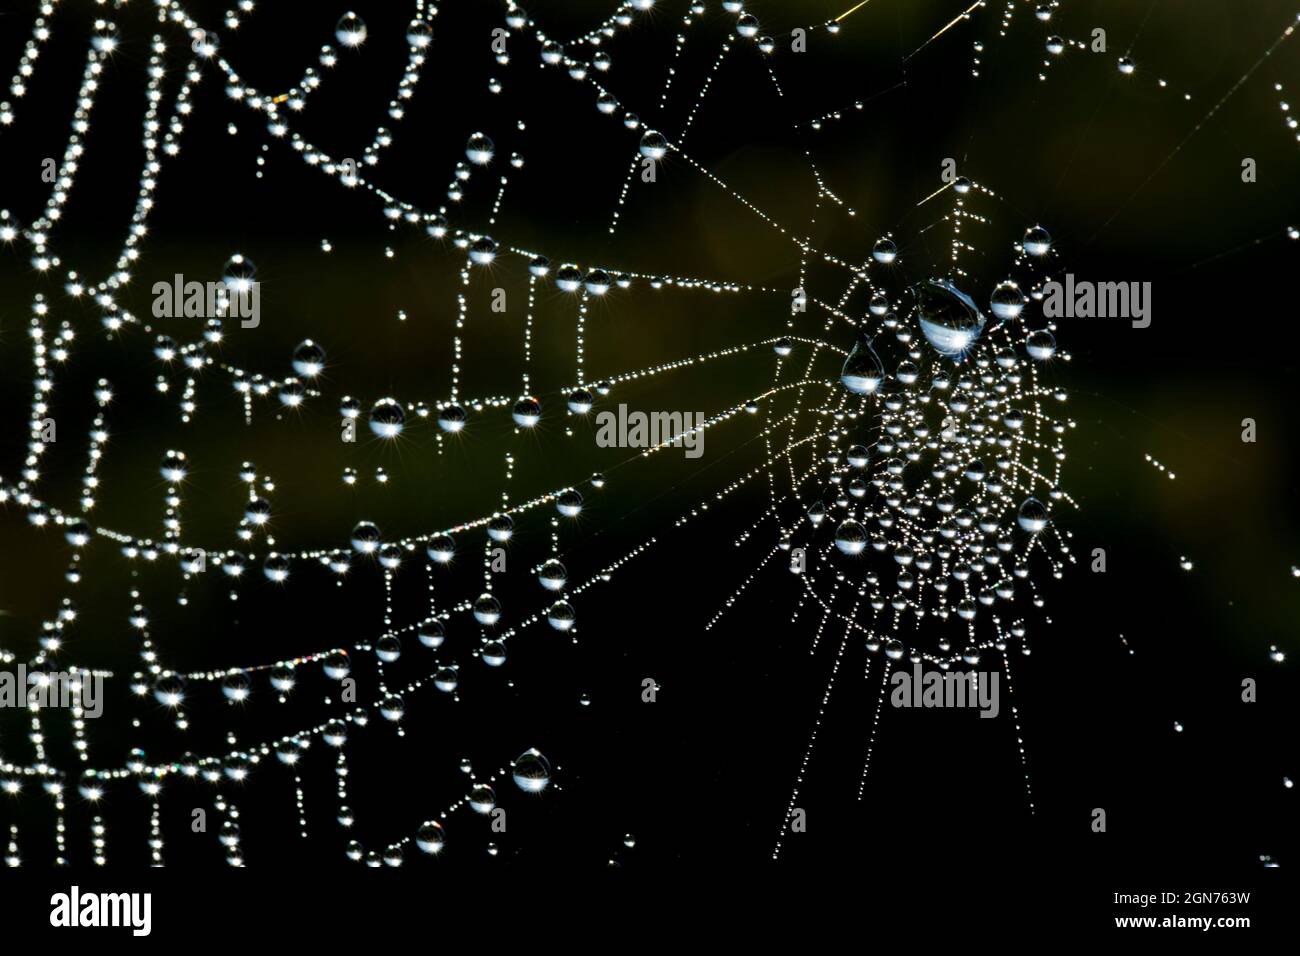 La tela de Spider en una mañana dewy con gotitas. Powys, Gales. Mayo. Foto de stock